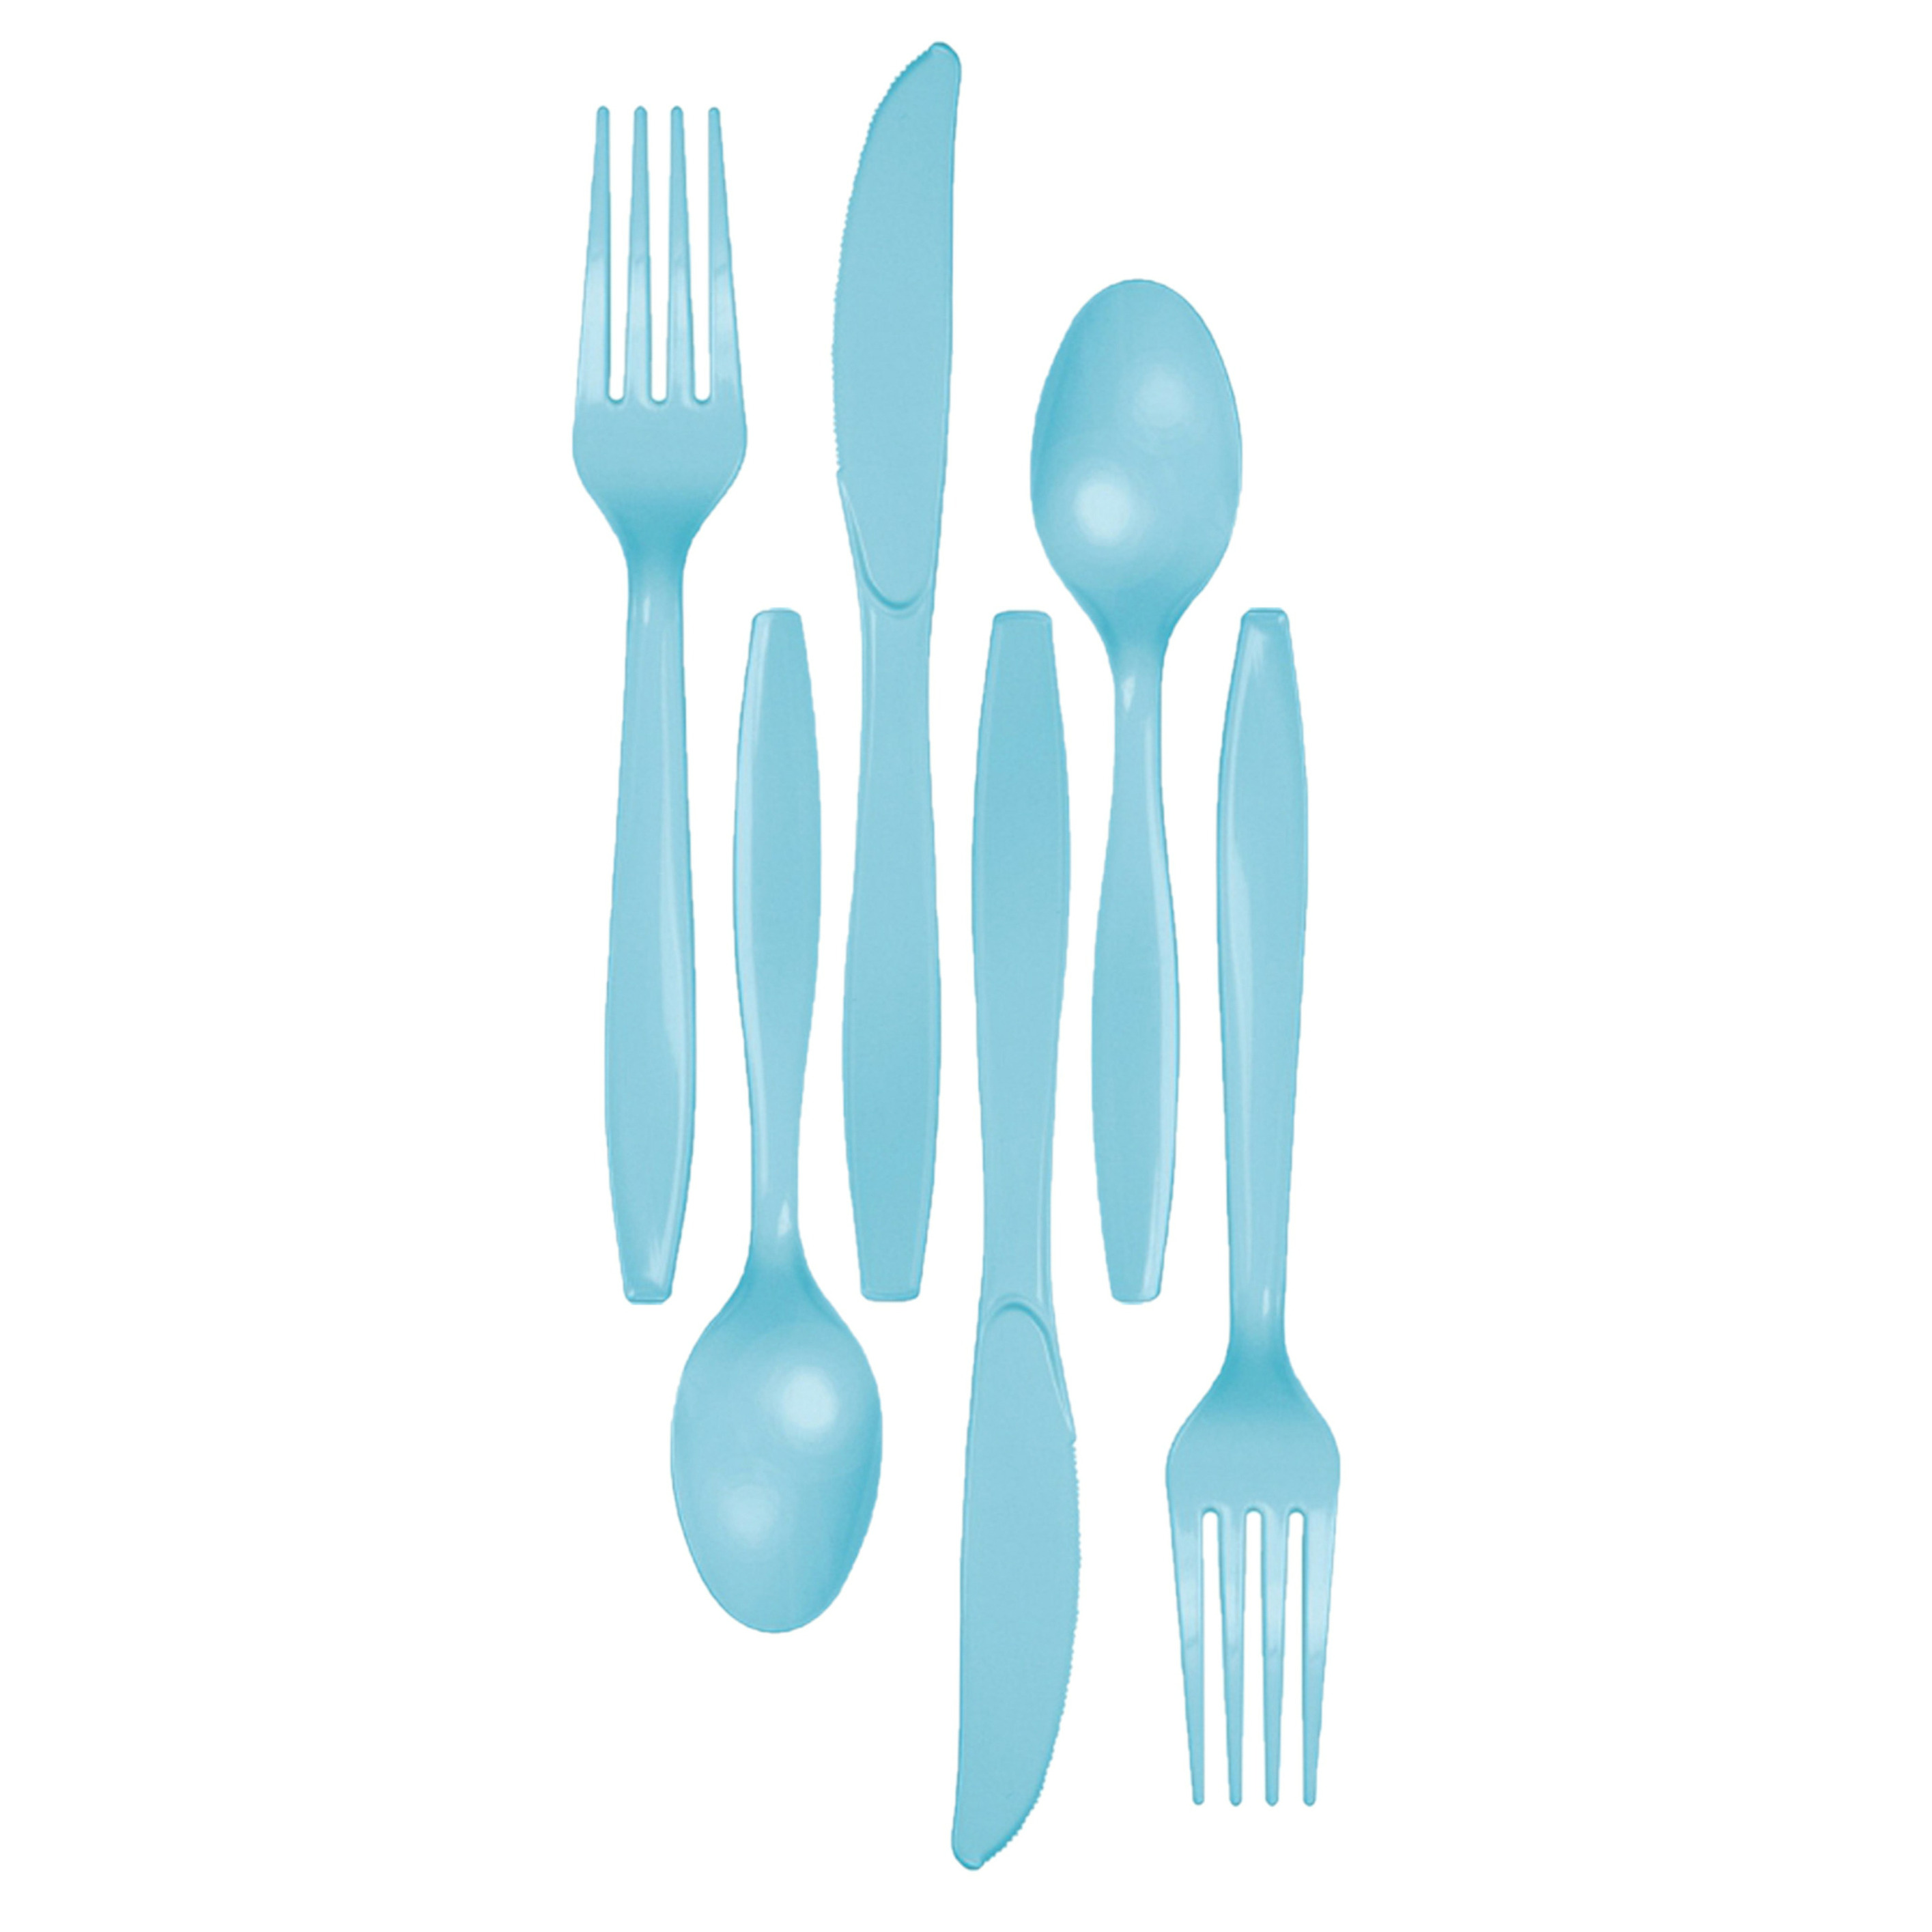 Kunststof bestek party-bbq setje 48x delig lichtblauw messen-vorken-lepels herbruikbaar